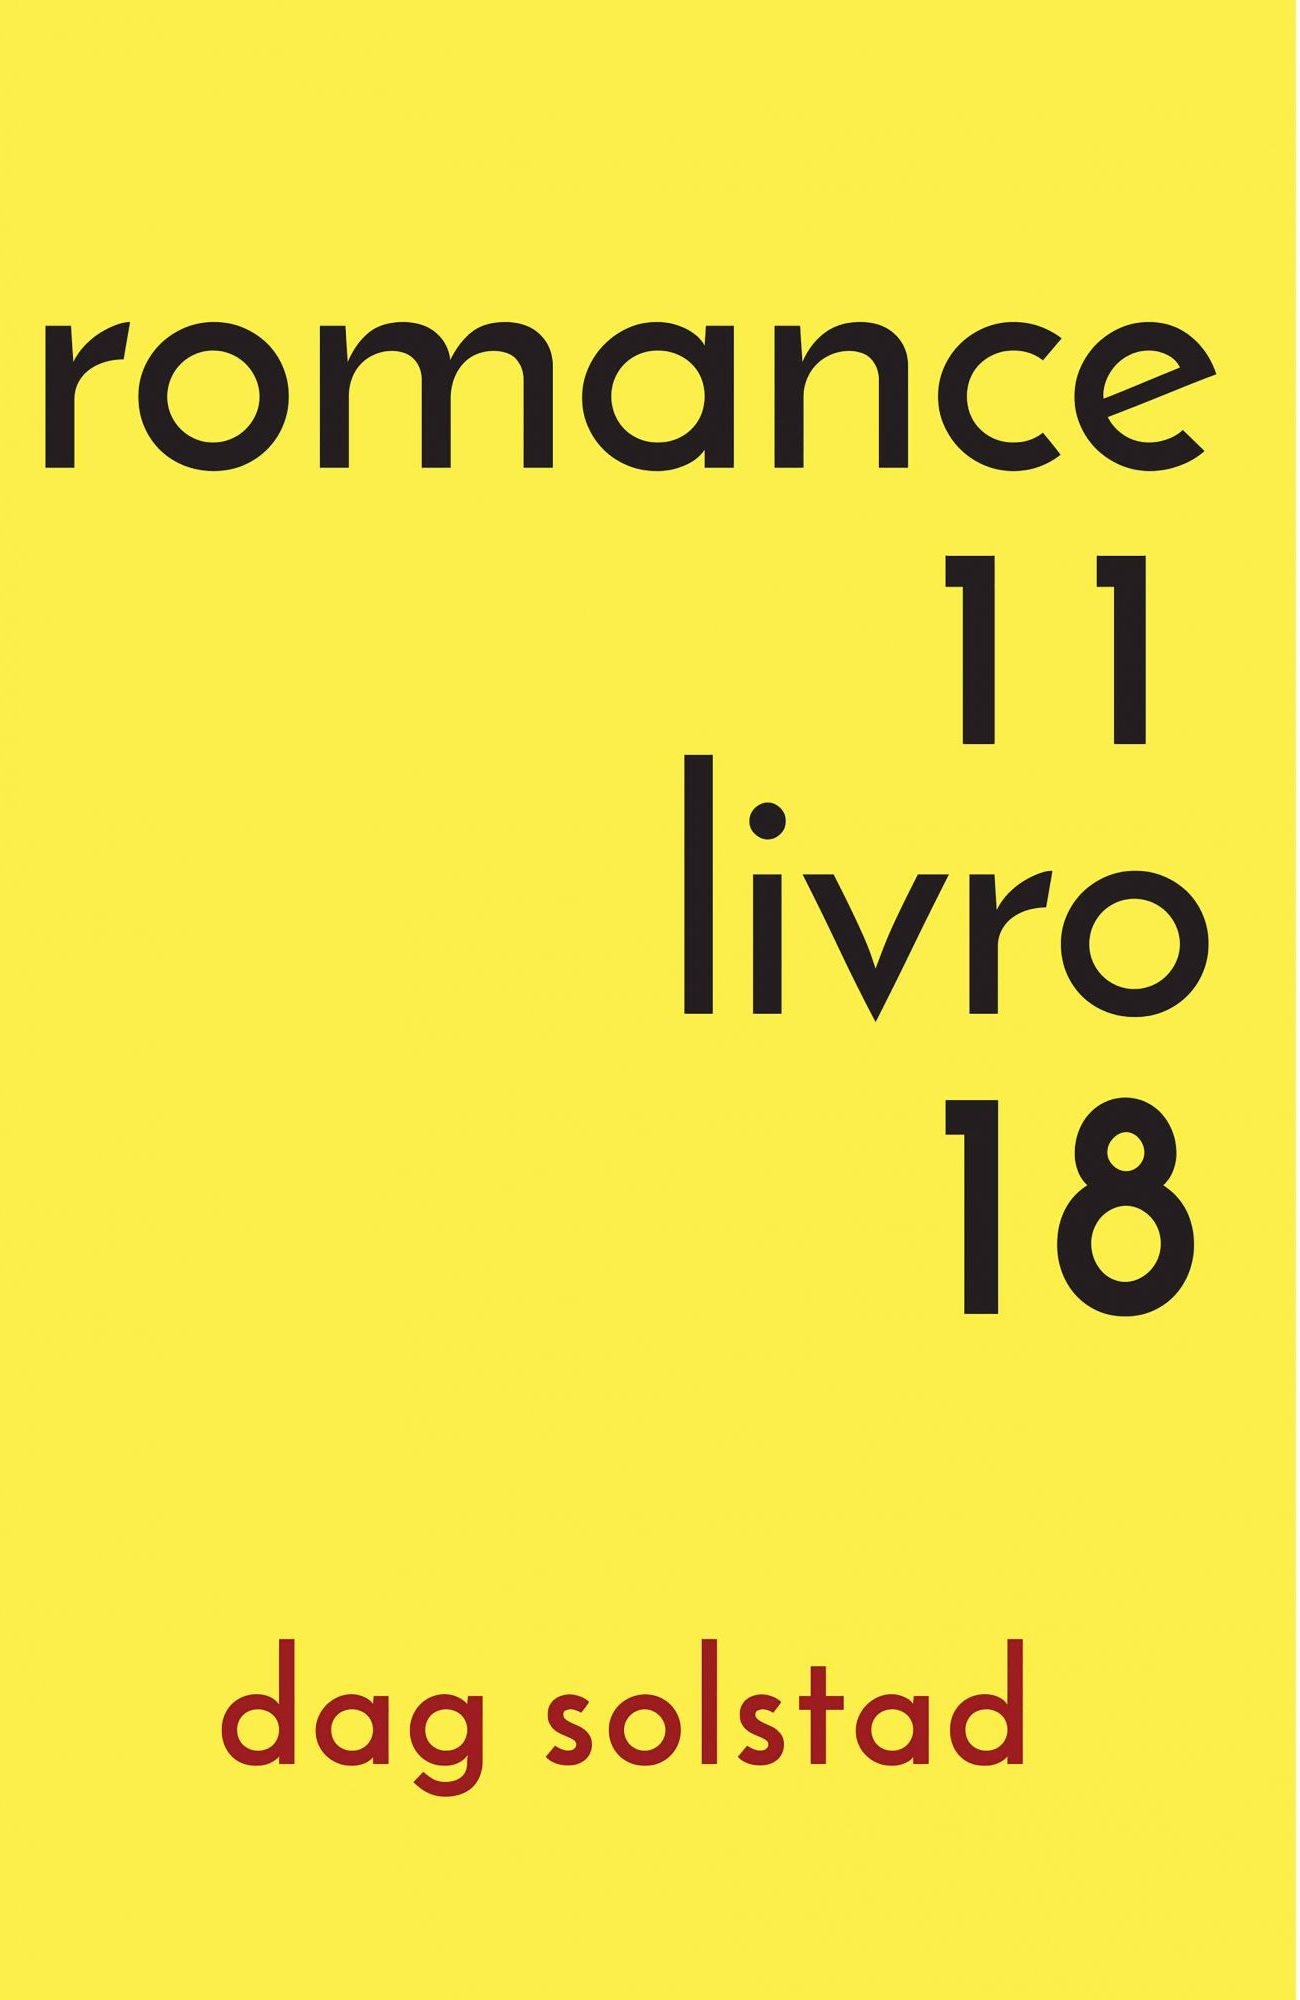 Romance 11, livro 18